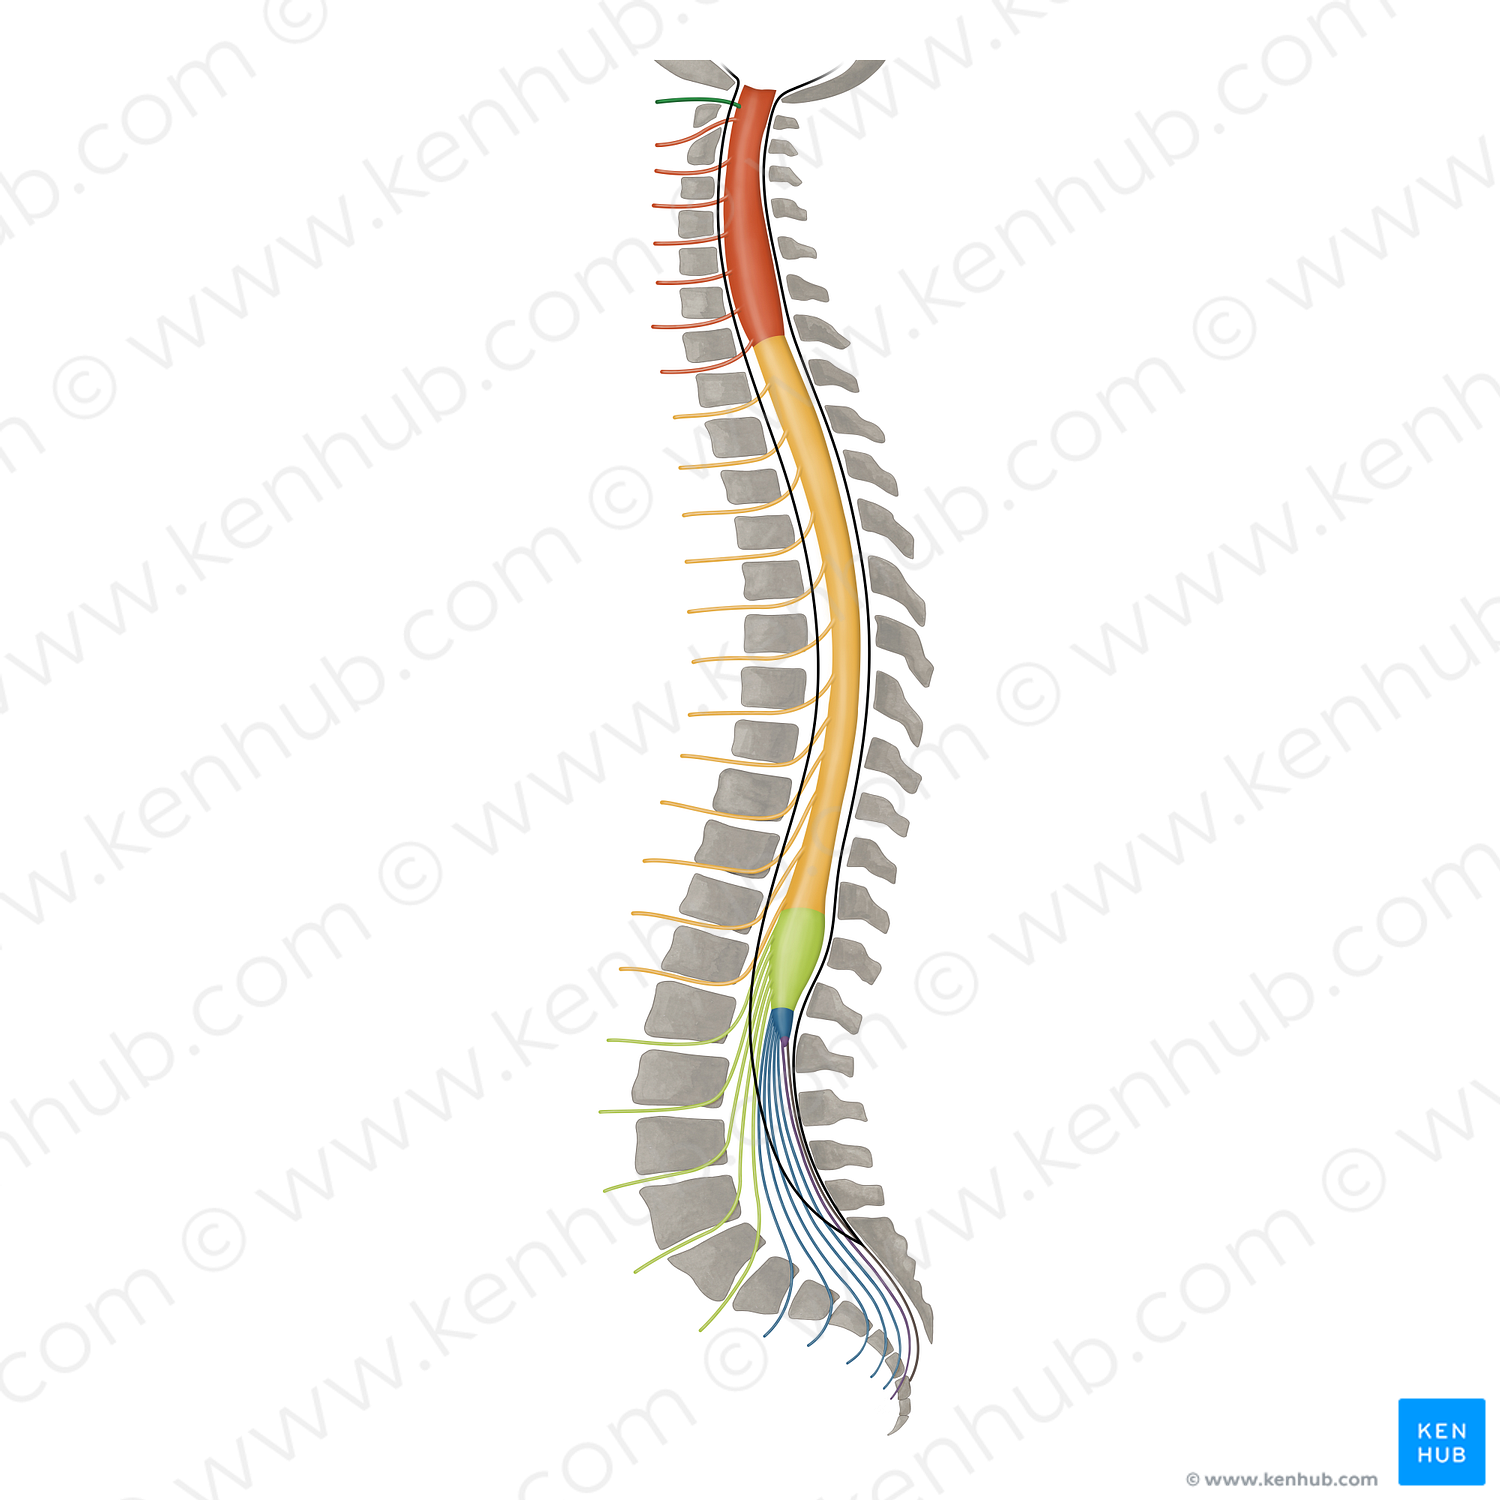 Spinal nerve C1 (#16410)